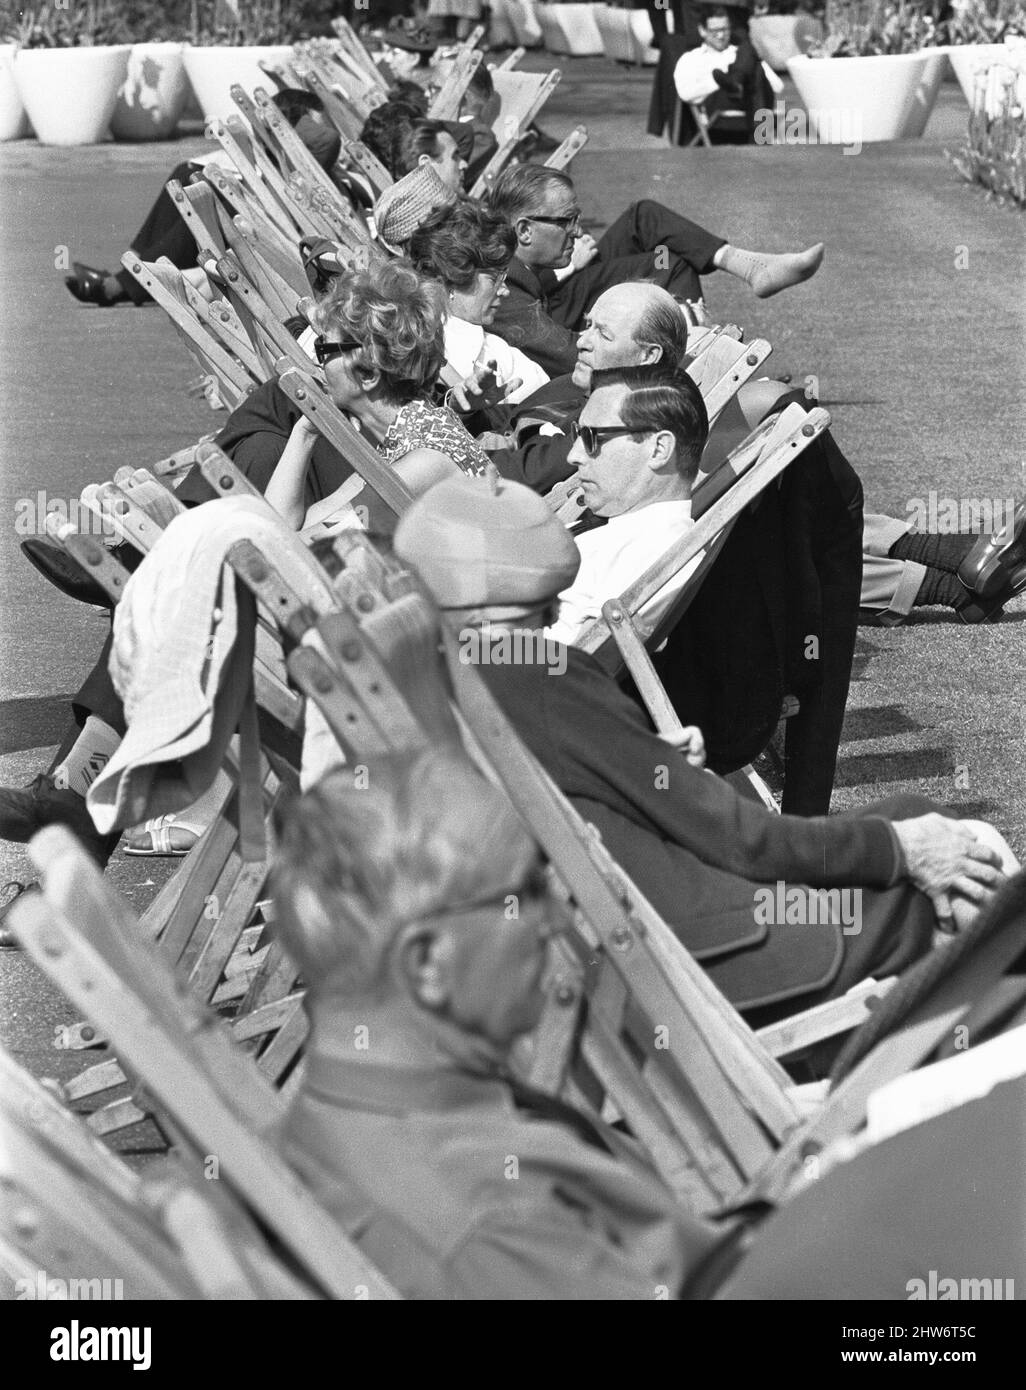 Les Londoniens profitent du soleil d'été dans les jardins d'Embankment. 3rd juin 1968 Banque D'Images